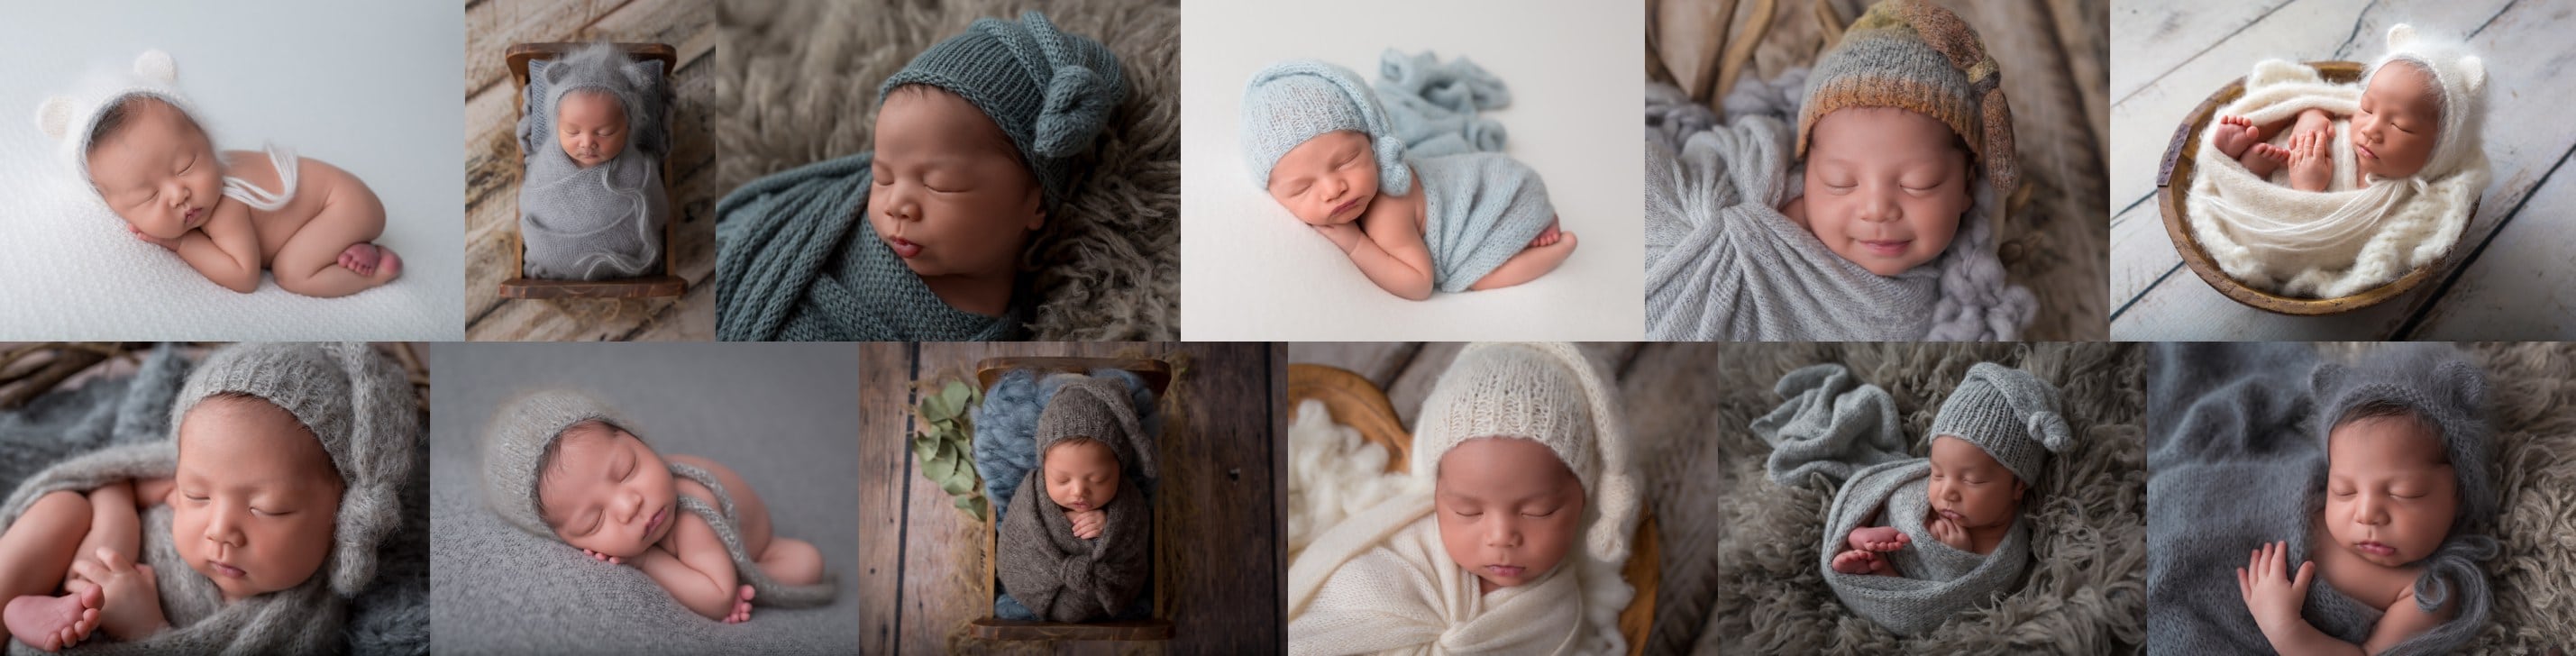 newborn baby boy with hat collage